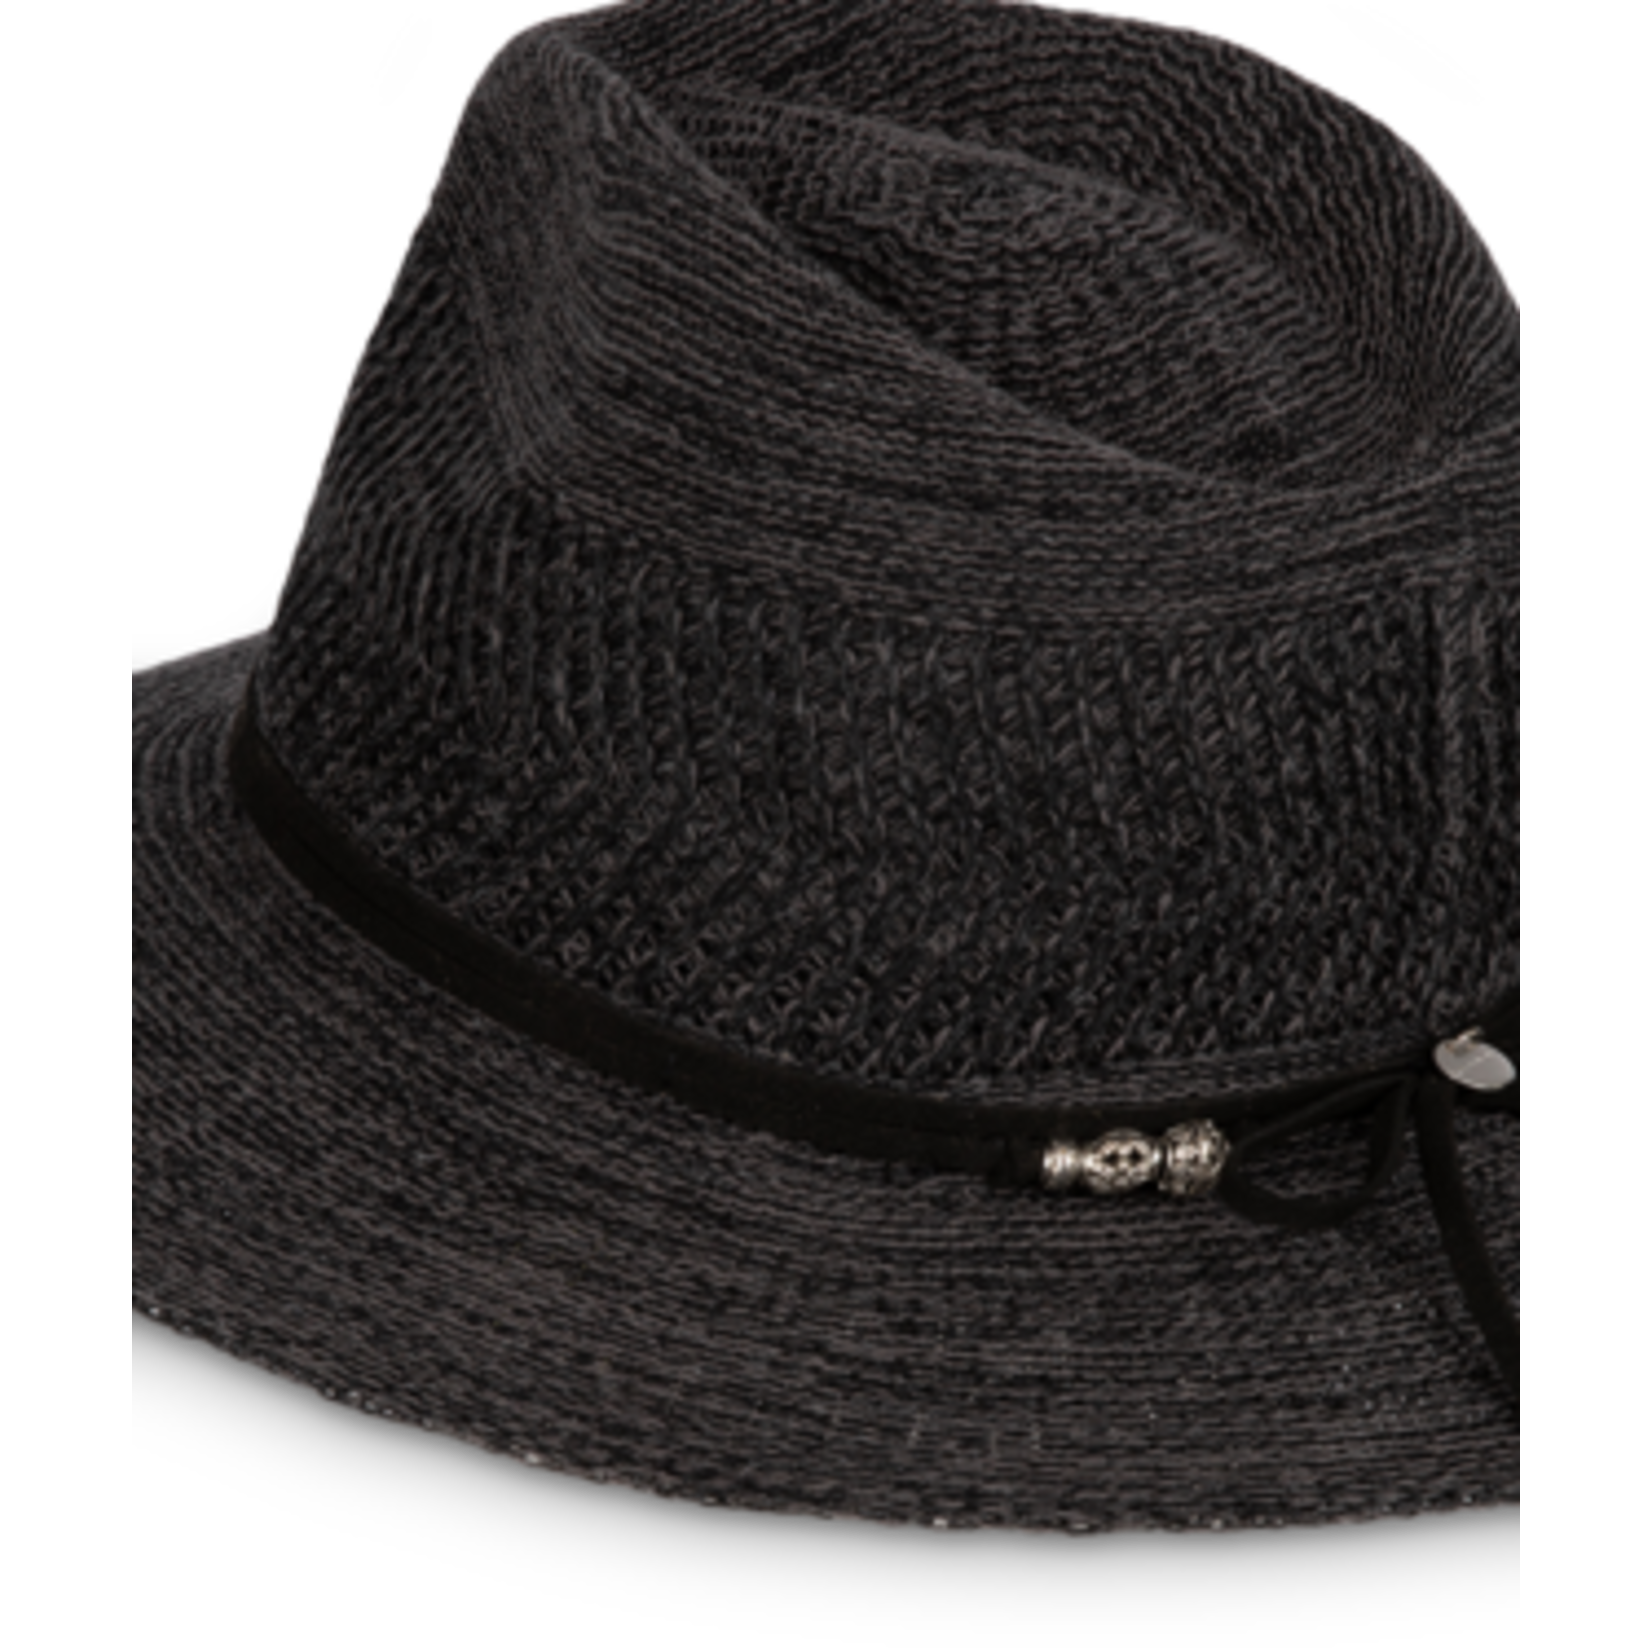 Knit Brim Charcoal Safari Hat - Josie